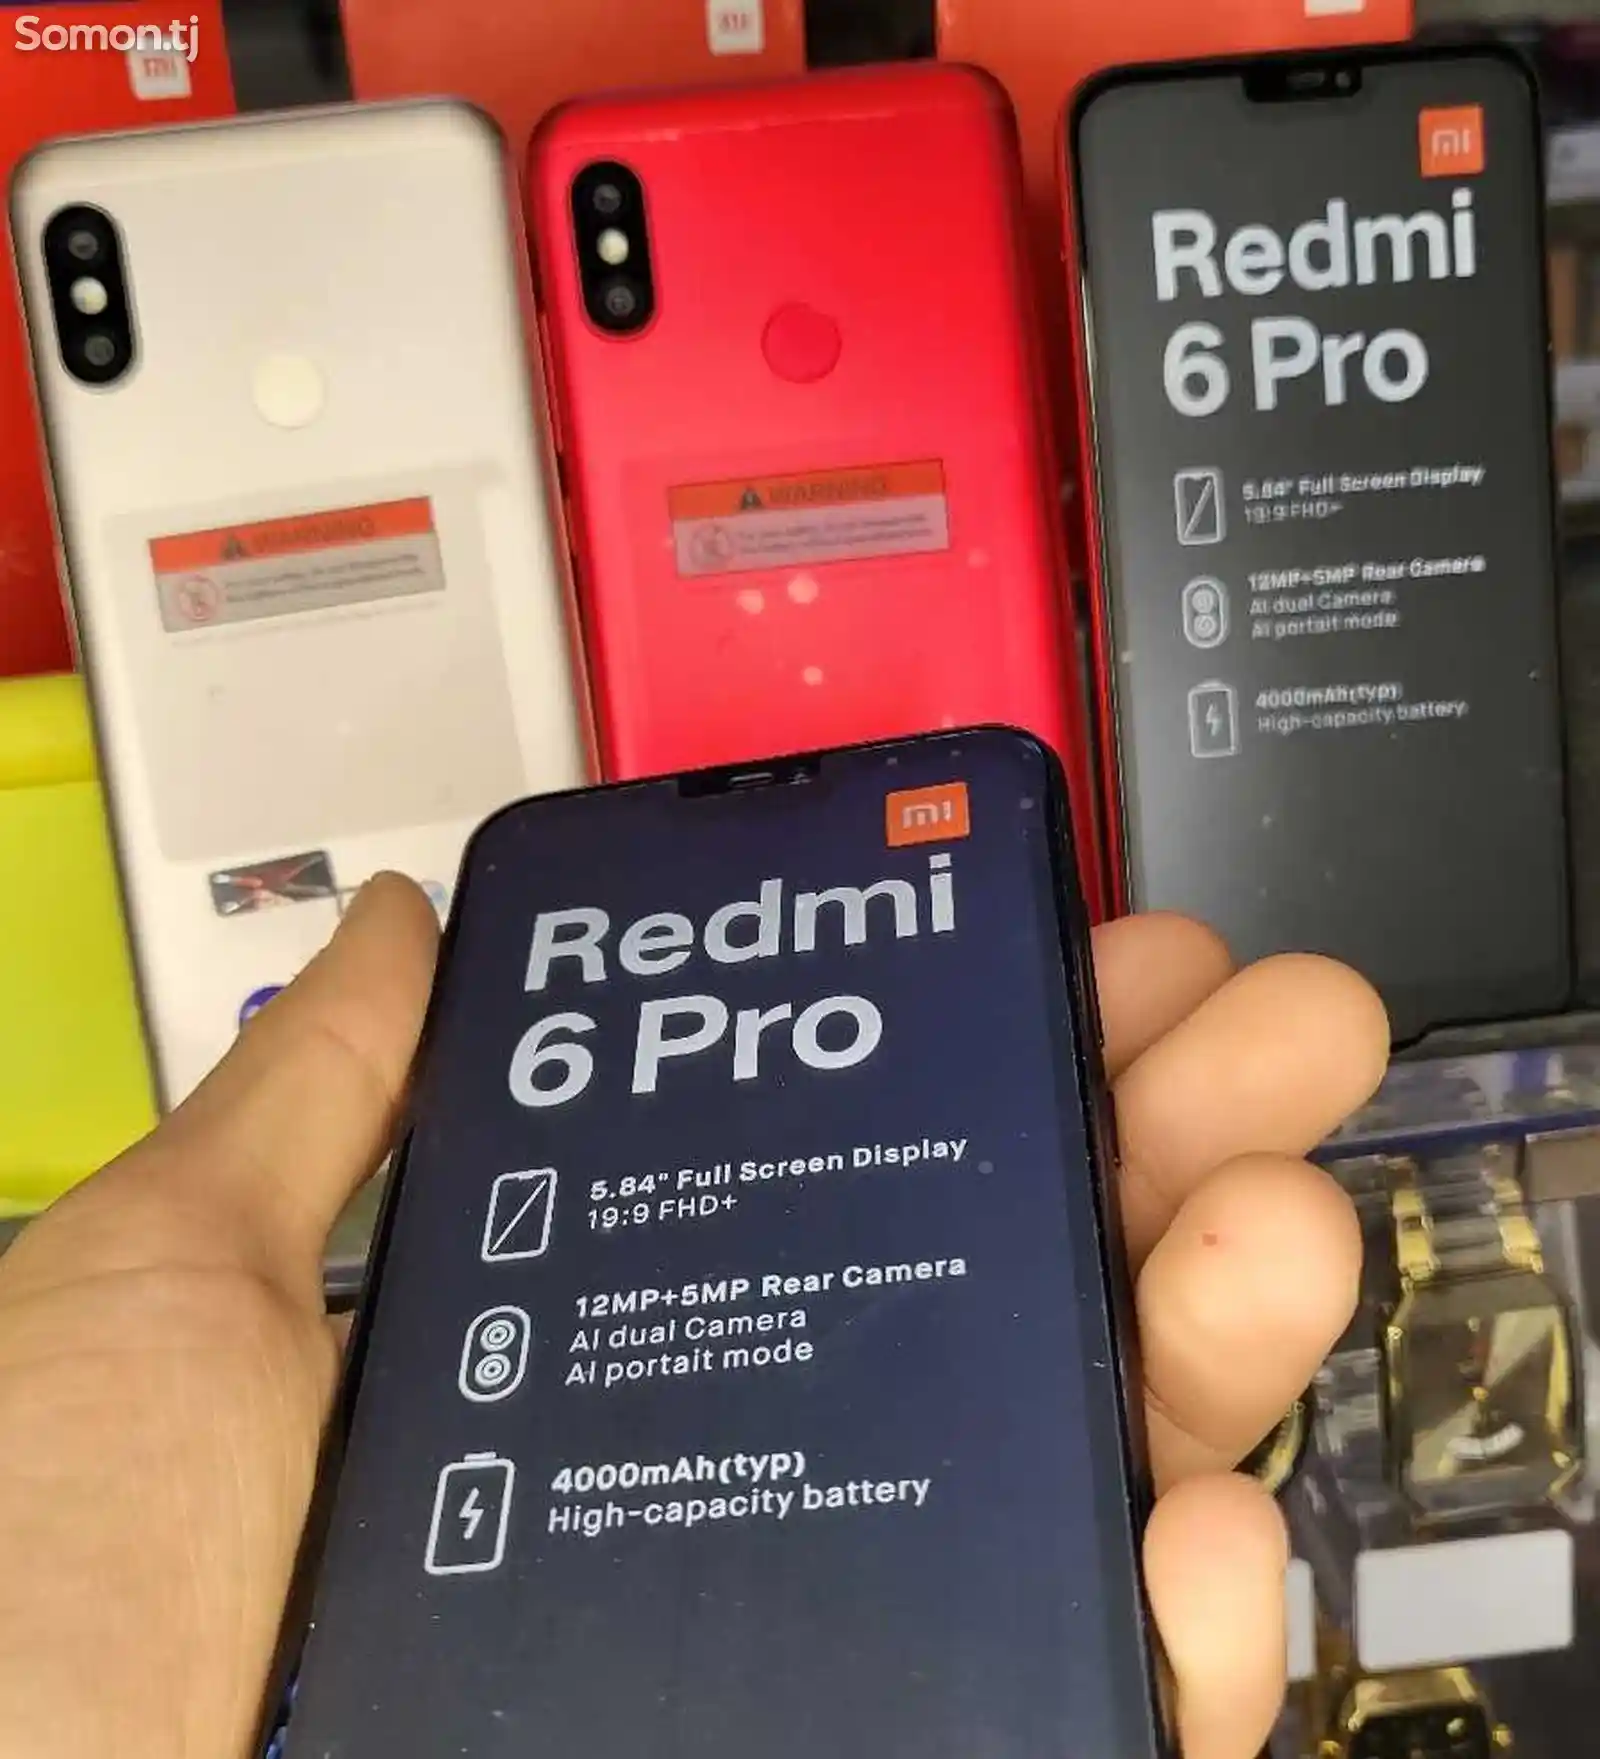 Xiaomi Redmi 6 Рro, 64gb-4